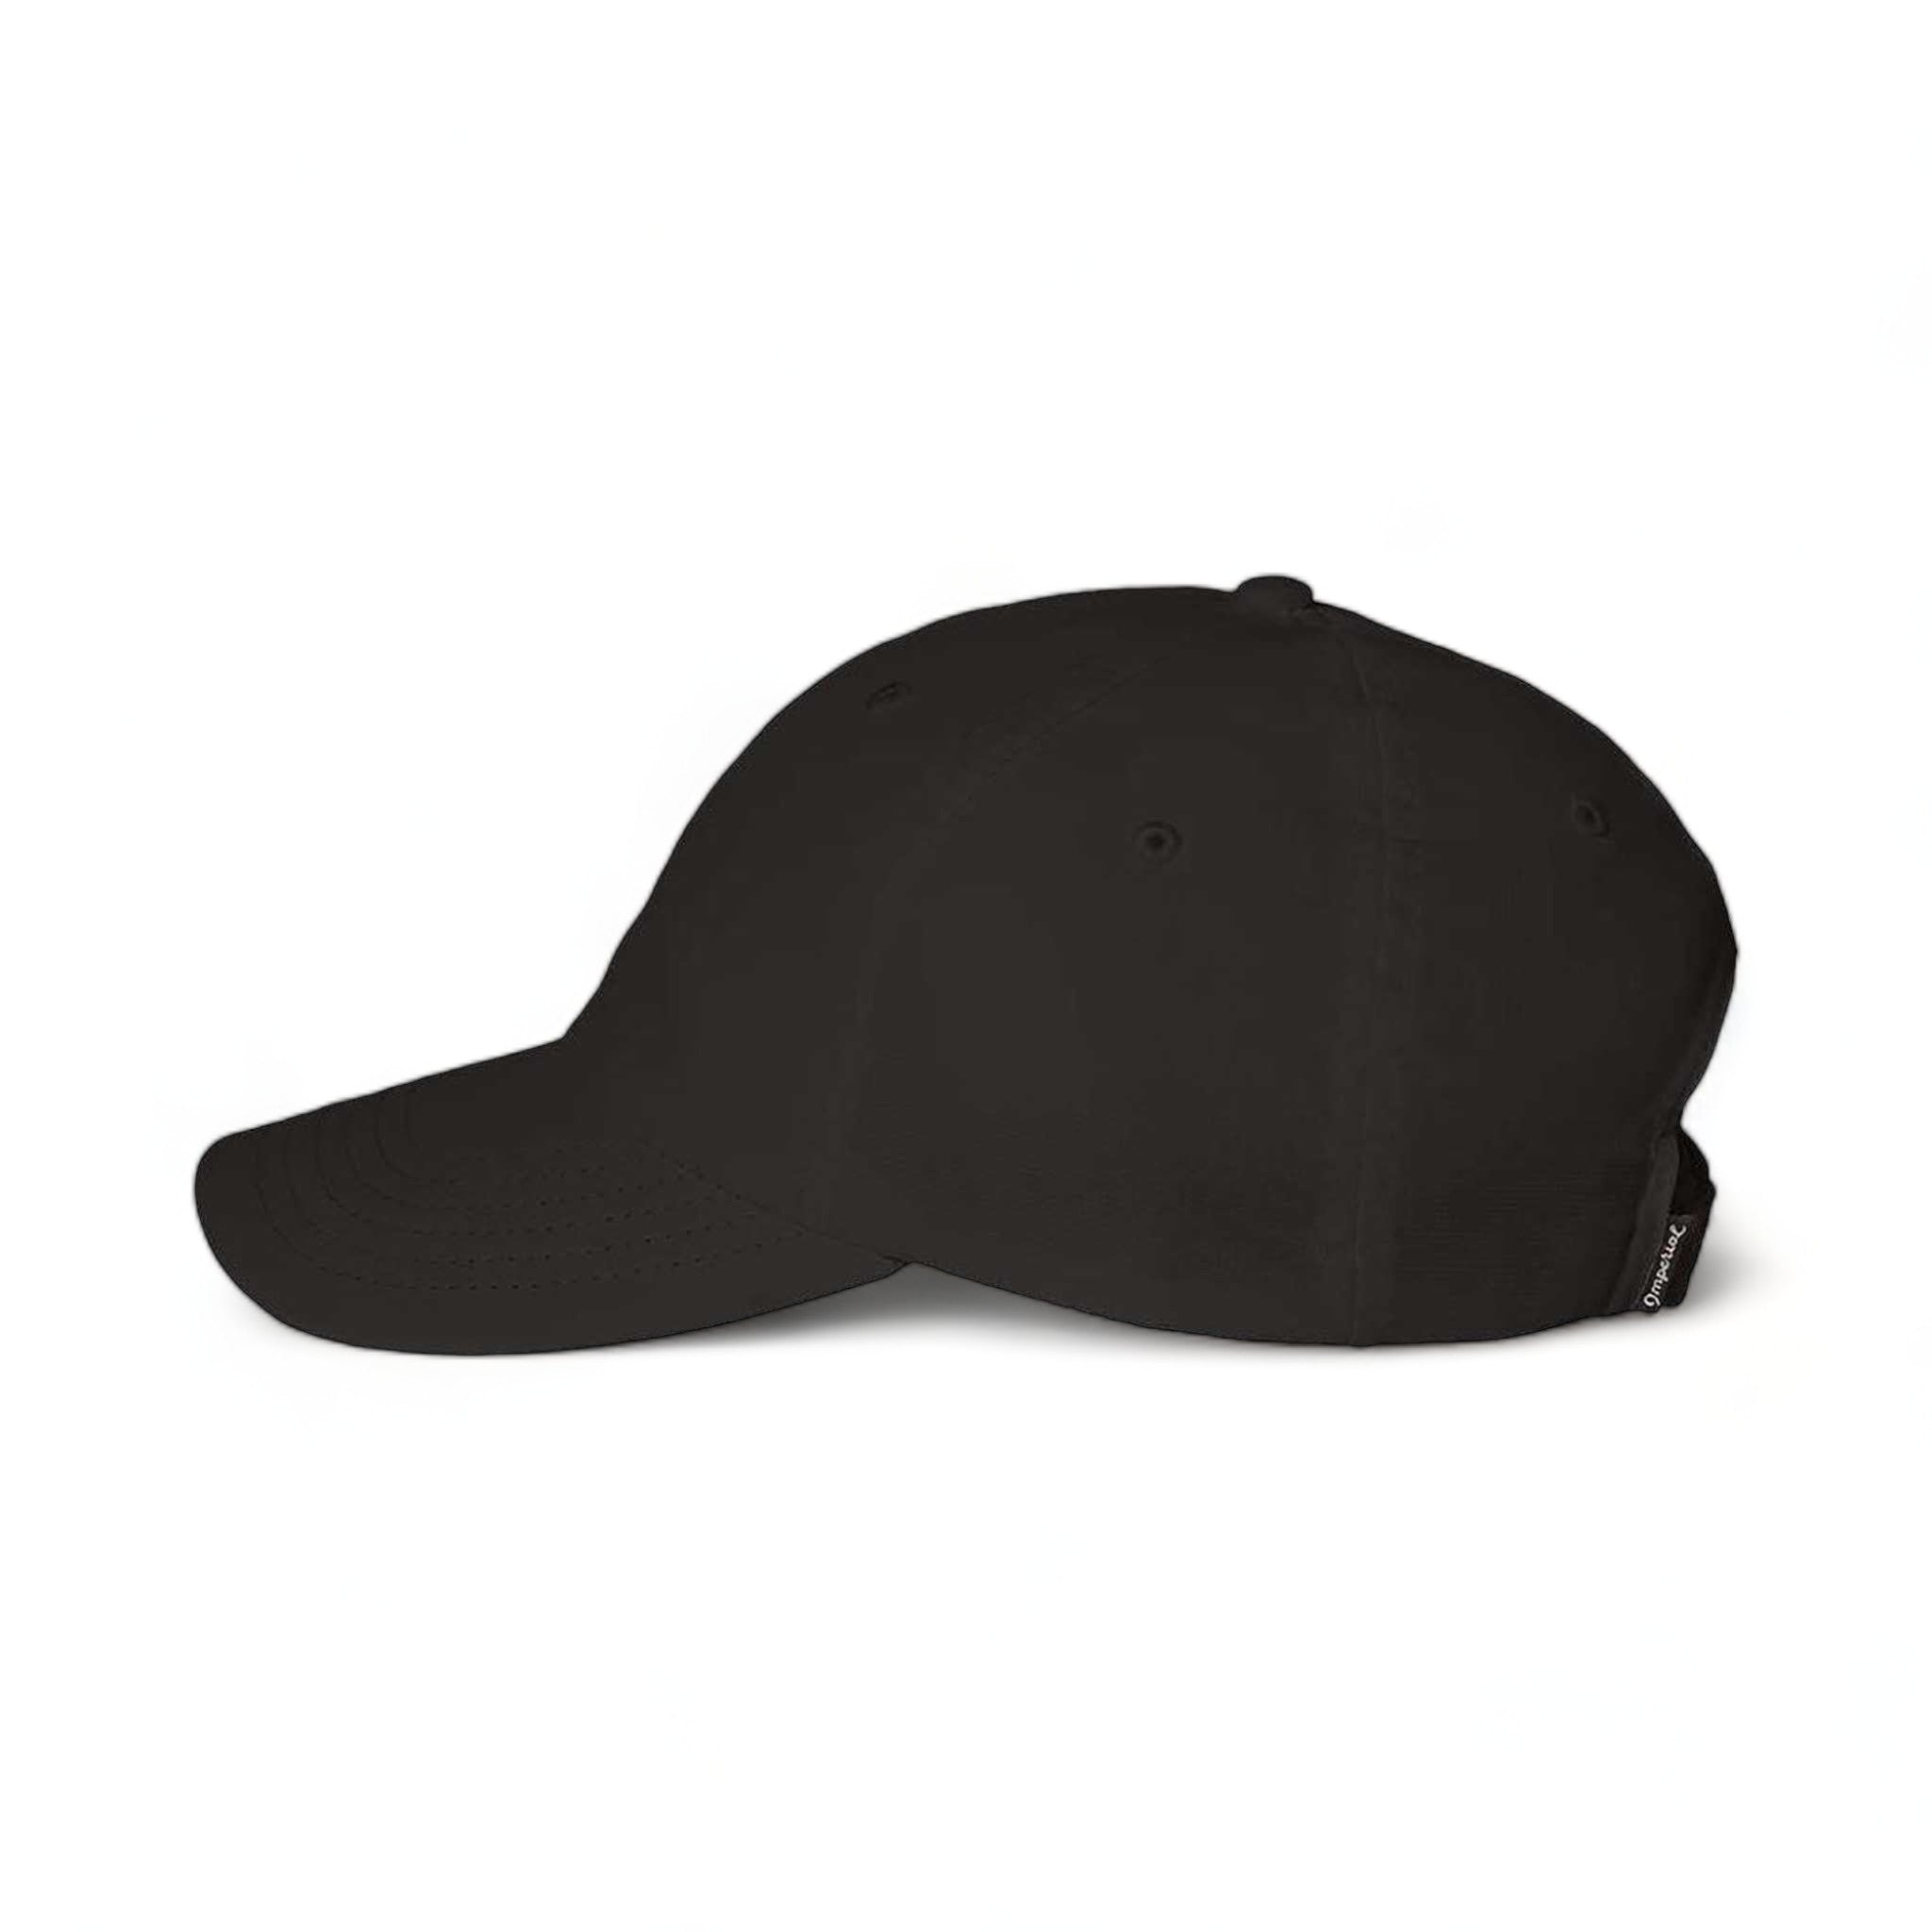 Side view of Imperial X210P custom hat in dark grey